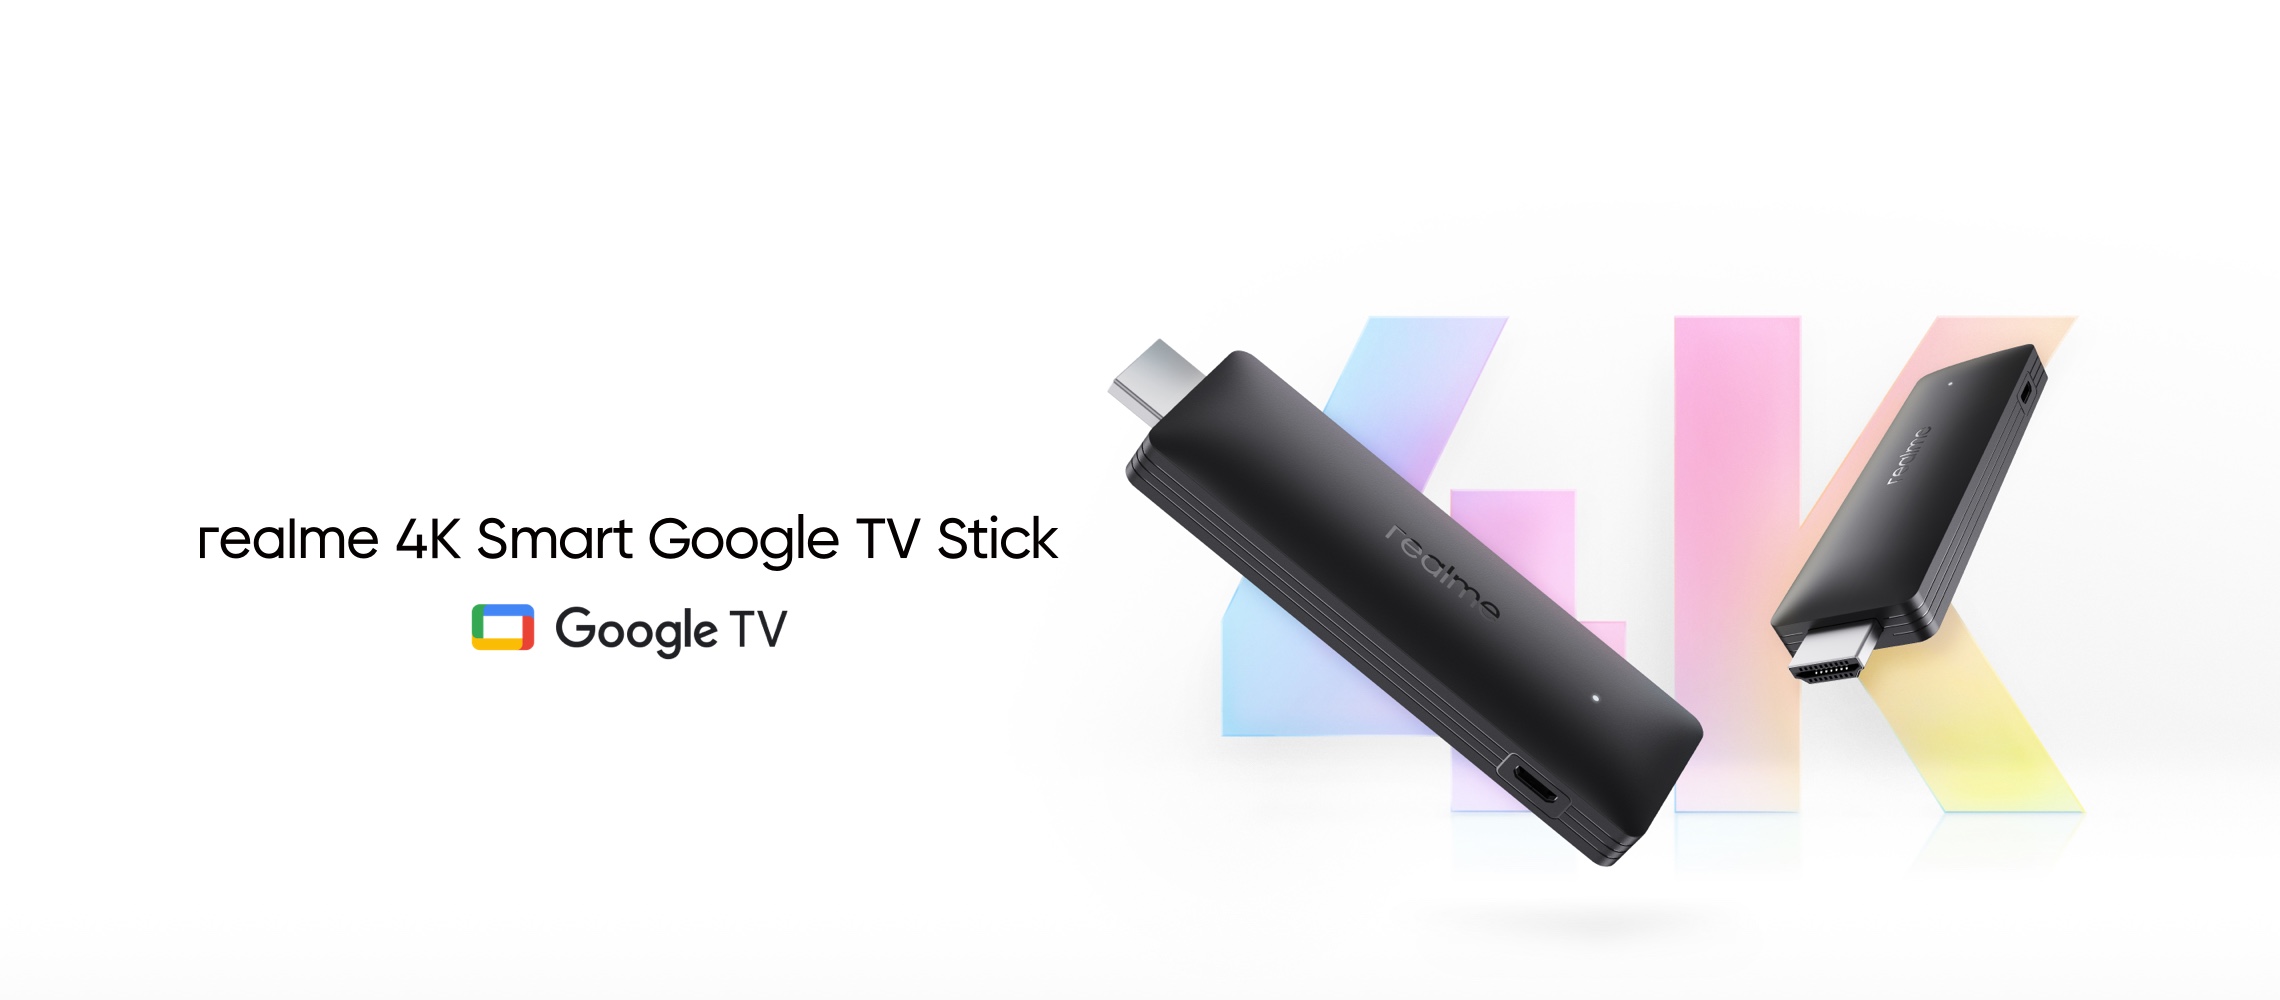 Realme 4K Smart Google TV Stick: set-top box in stile stick con 2GB di RAM, chip quad-core e Google TV a bordo per 53 dollari